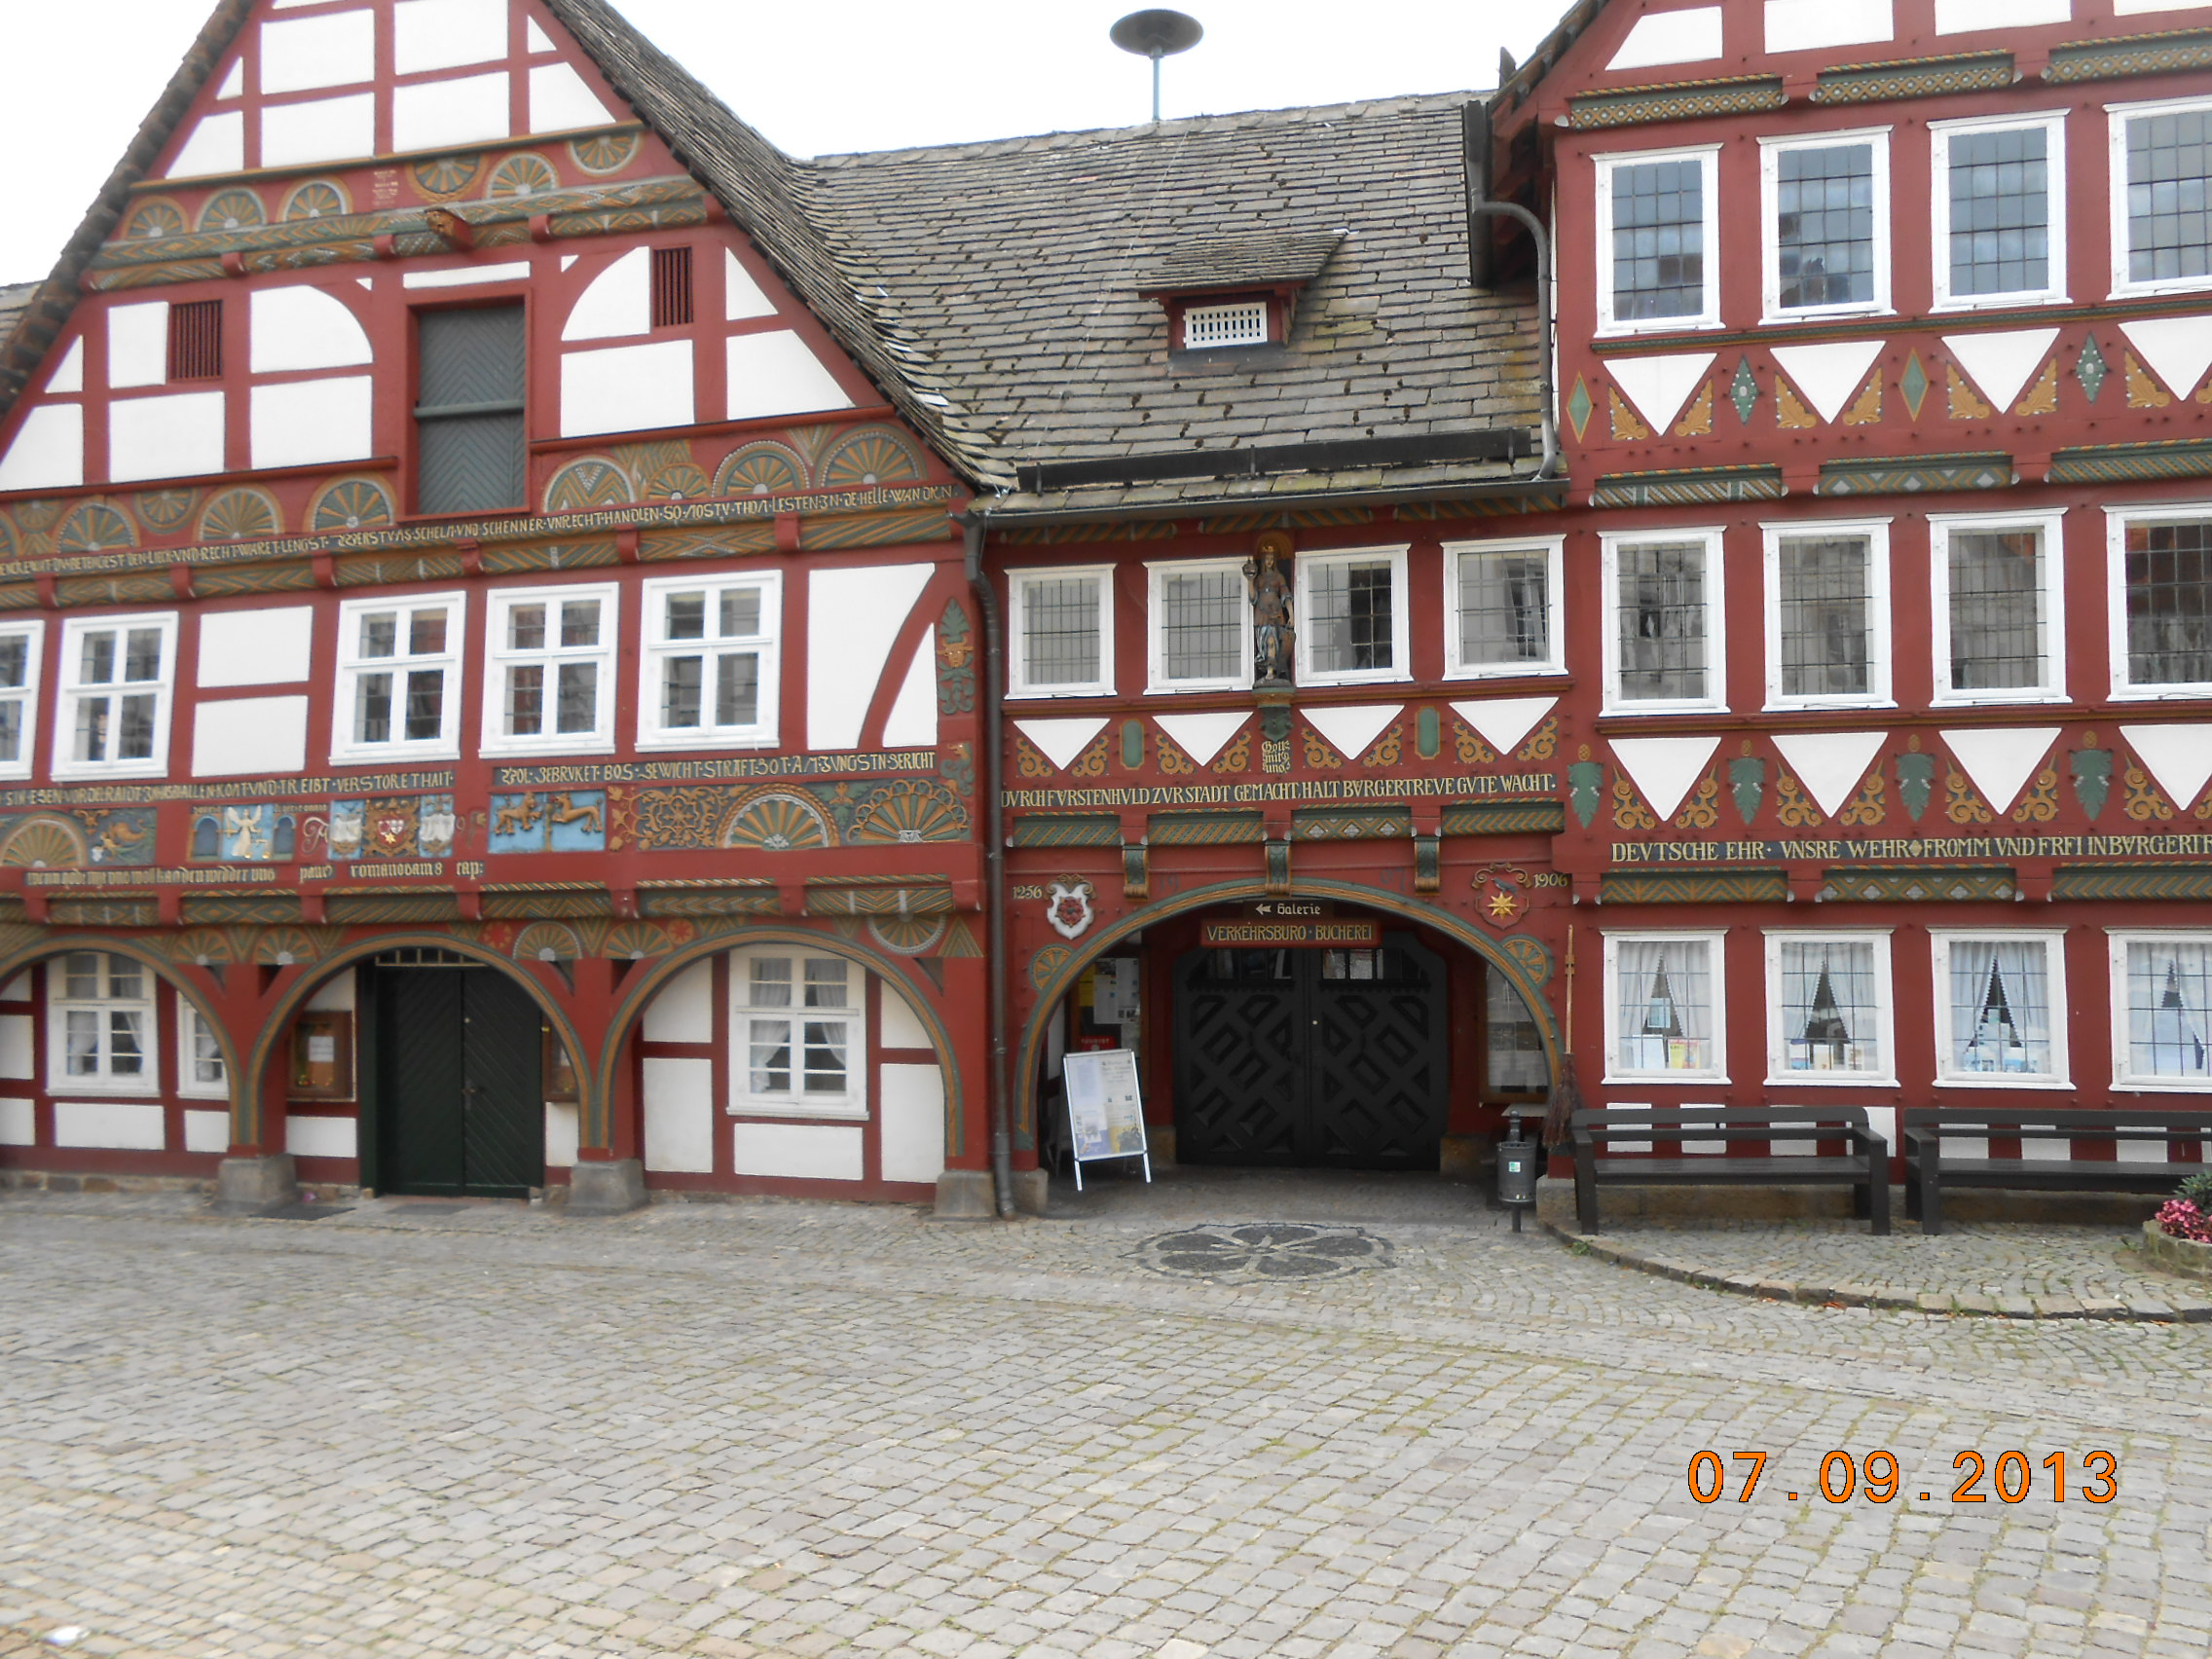 Viele Schnitzereien am historischen Rathaus von 1576